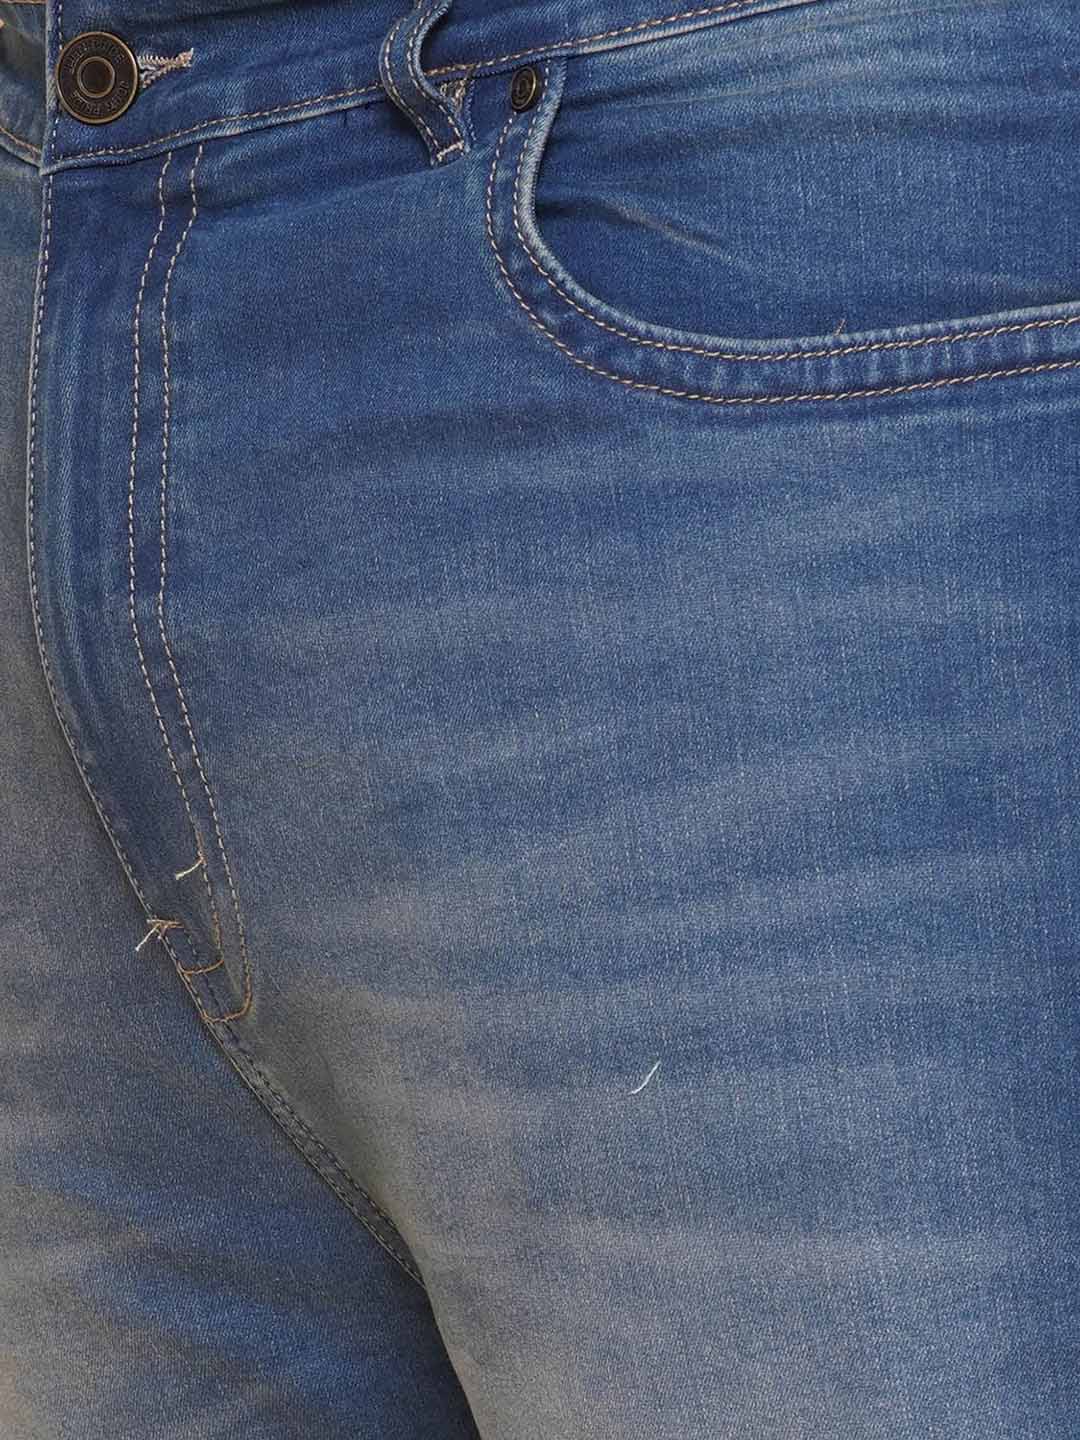 bottomwear/jeans/JPJ27108/jpj27108-2.jpg